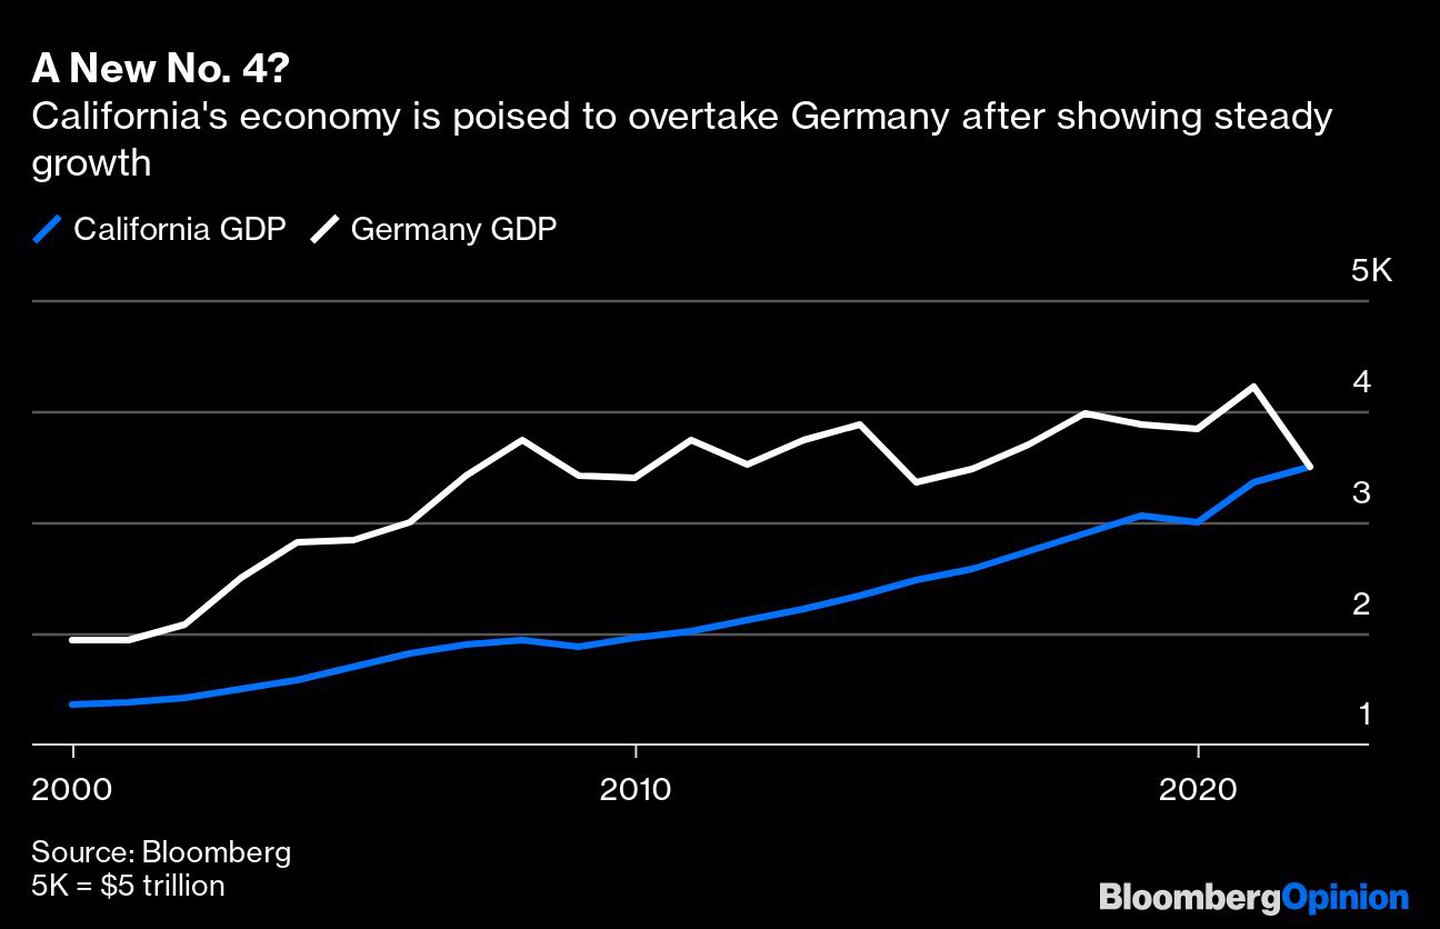  La economía californiana está a punto de superar a la alemana tras mostrar un crecimiento constante.dfd